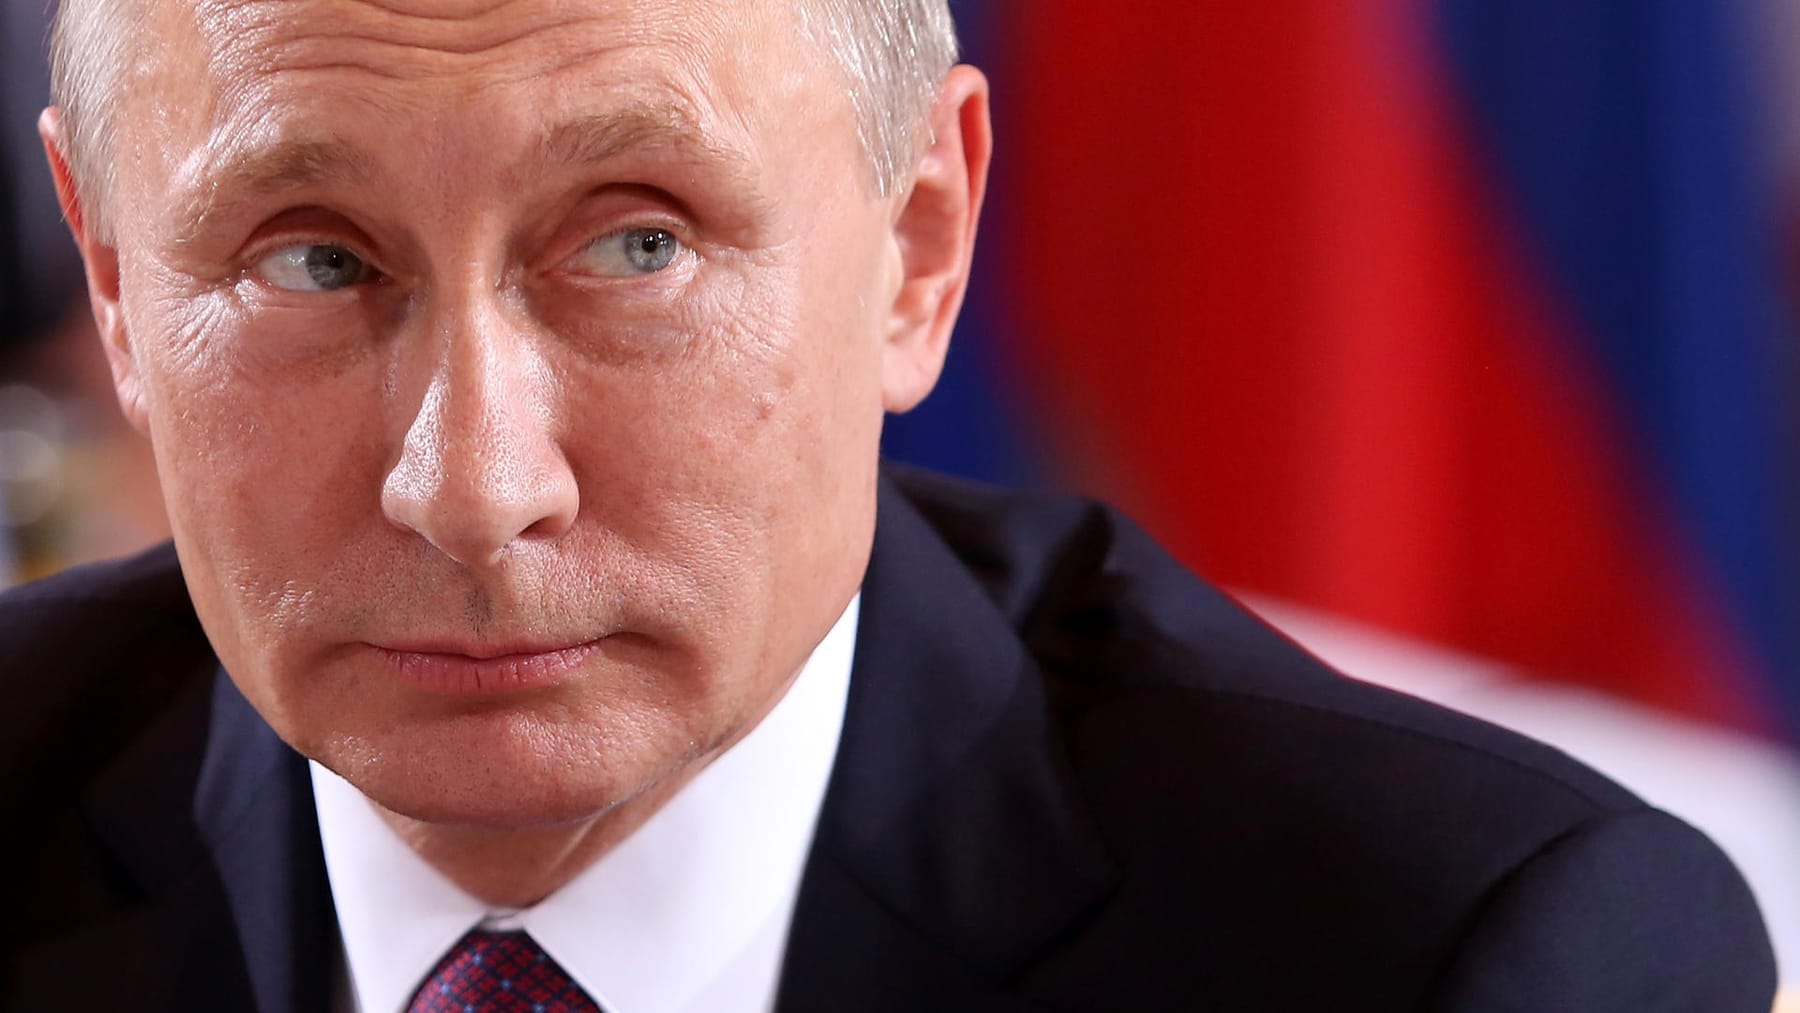 Vladimir Poutine : un rapport révèle des détails épicés